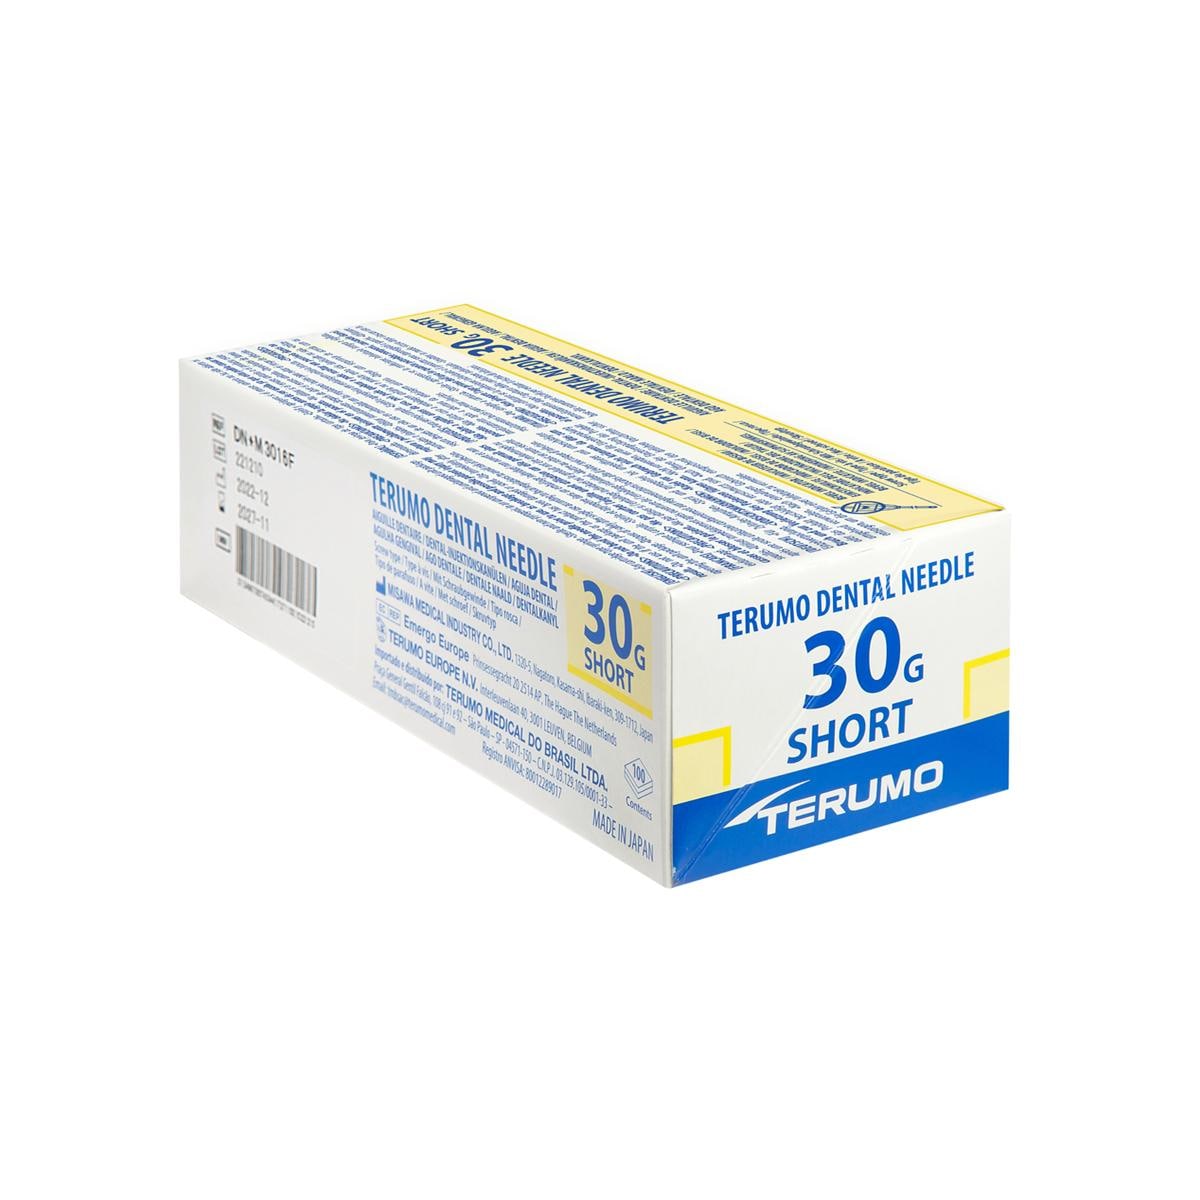 Terumo Dental Needle - 30G short, 0,3 x 21 mm